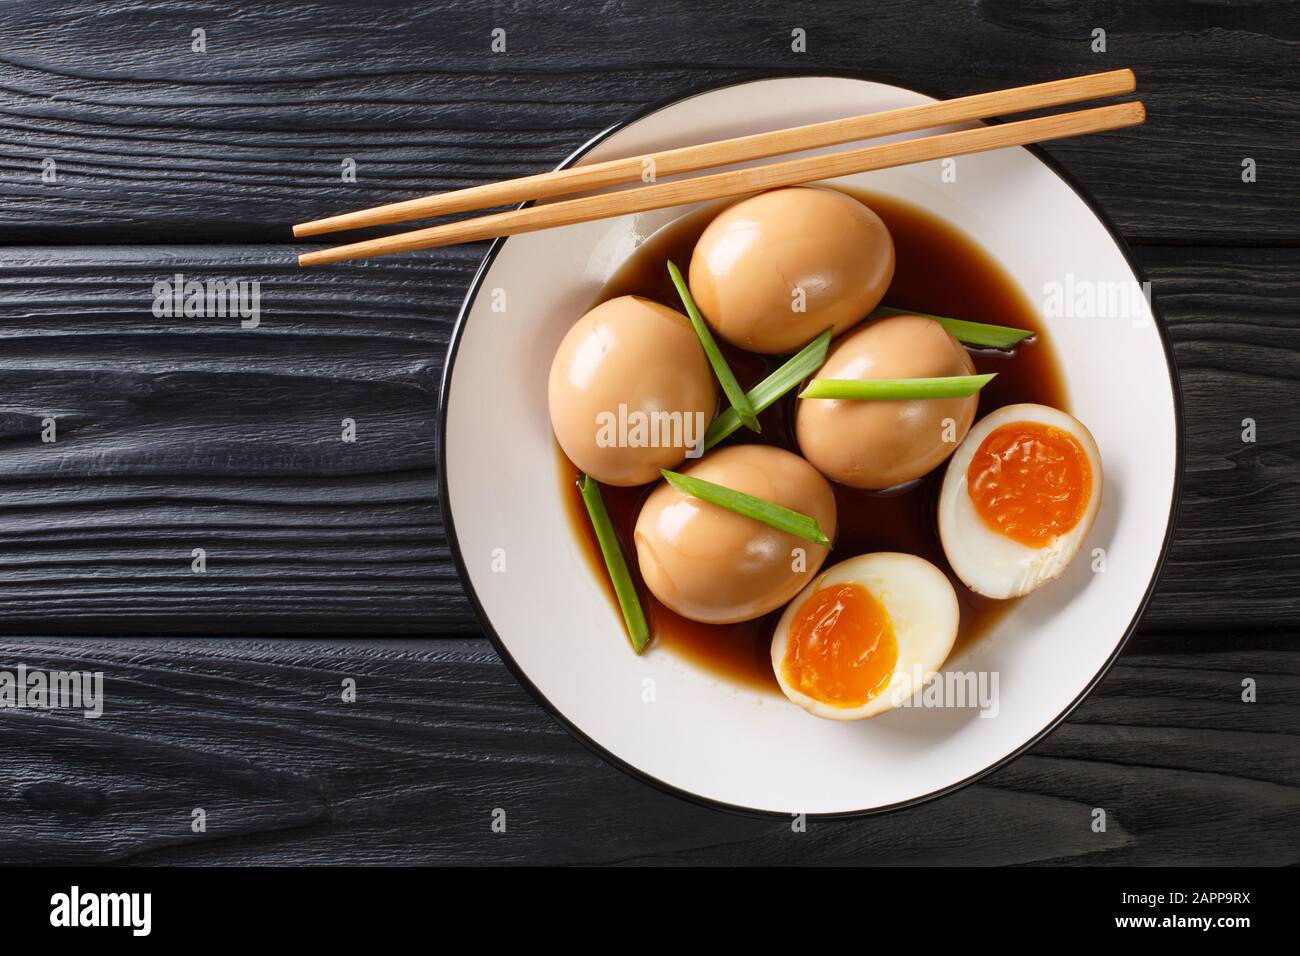 Salsa Di Soia All'uovo Sodo Immagini e Fotos Stock - Alamy